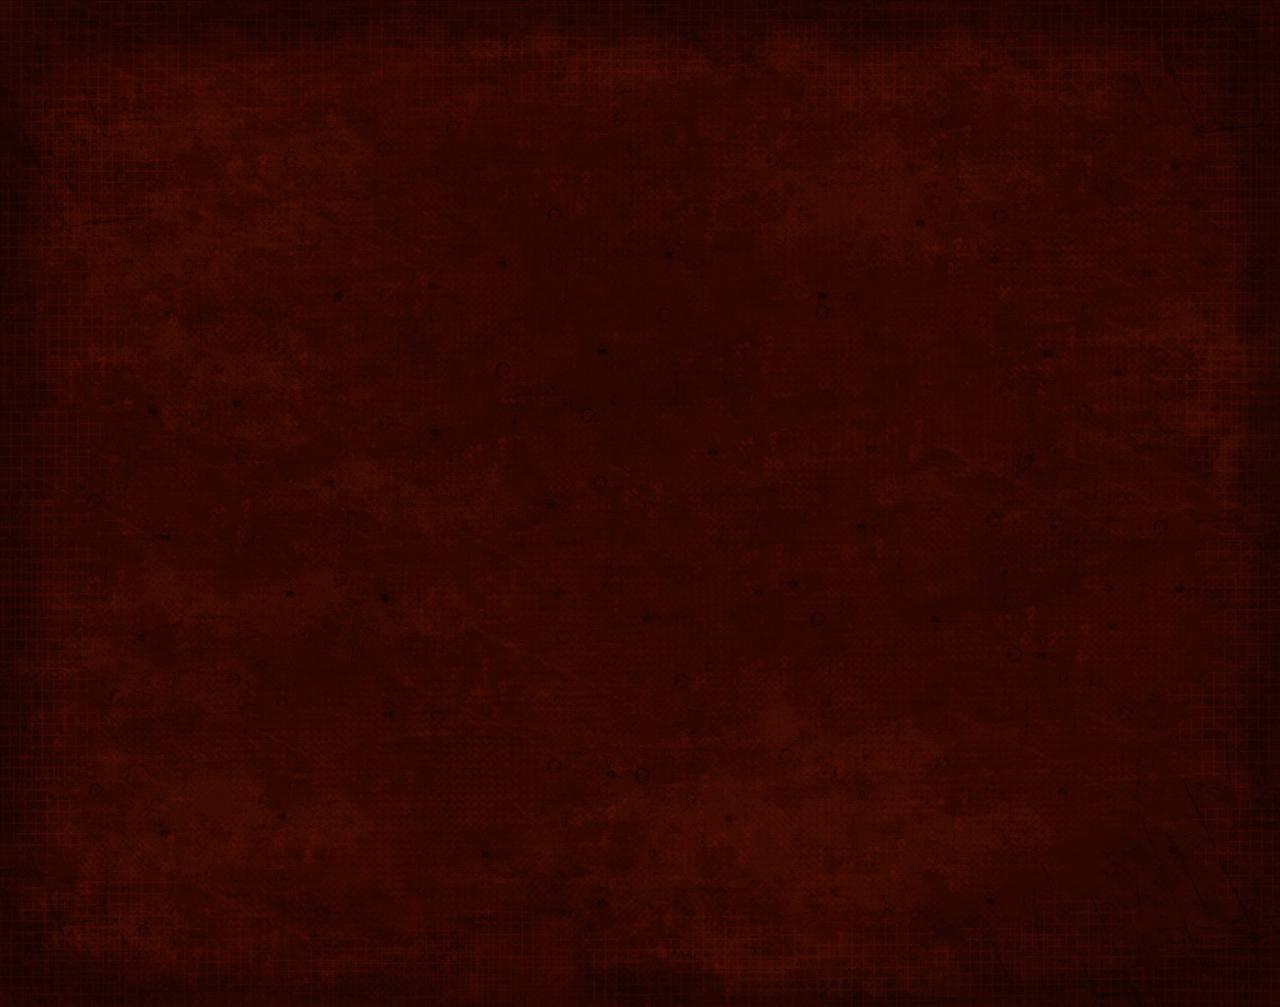 dark maroon background